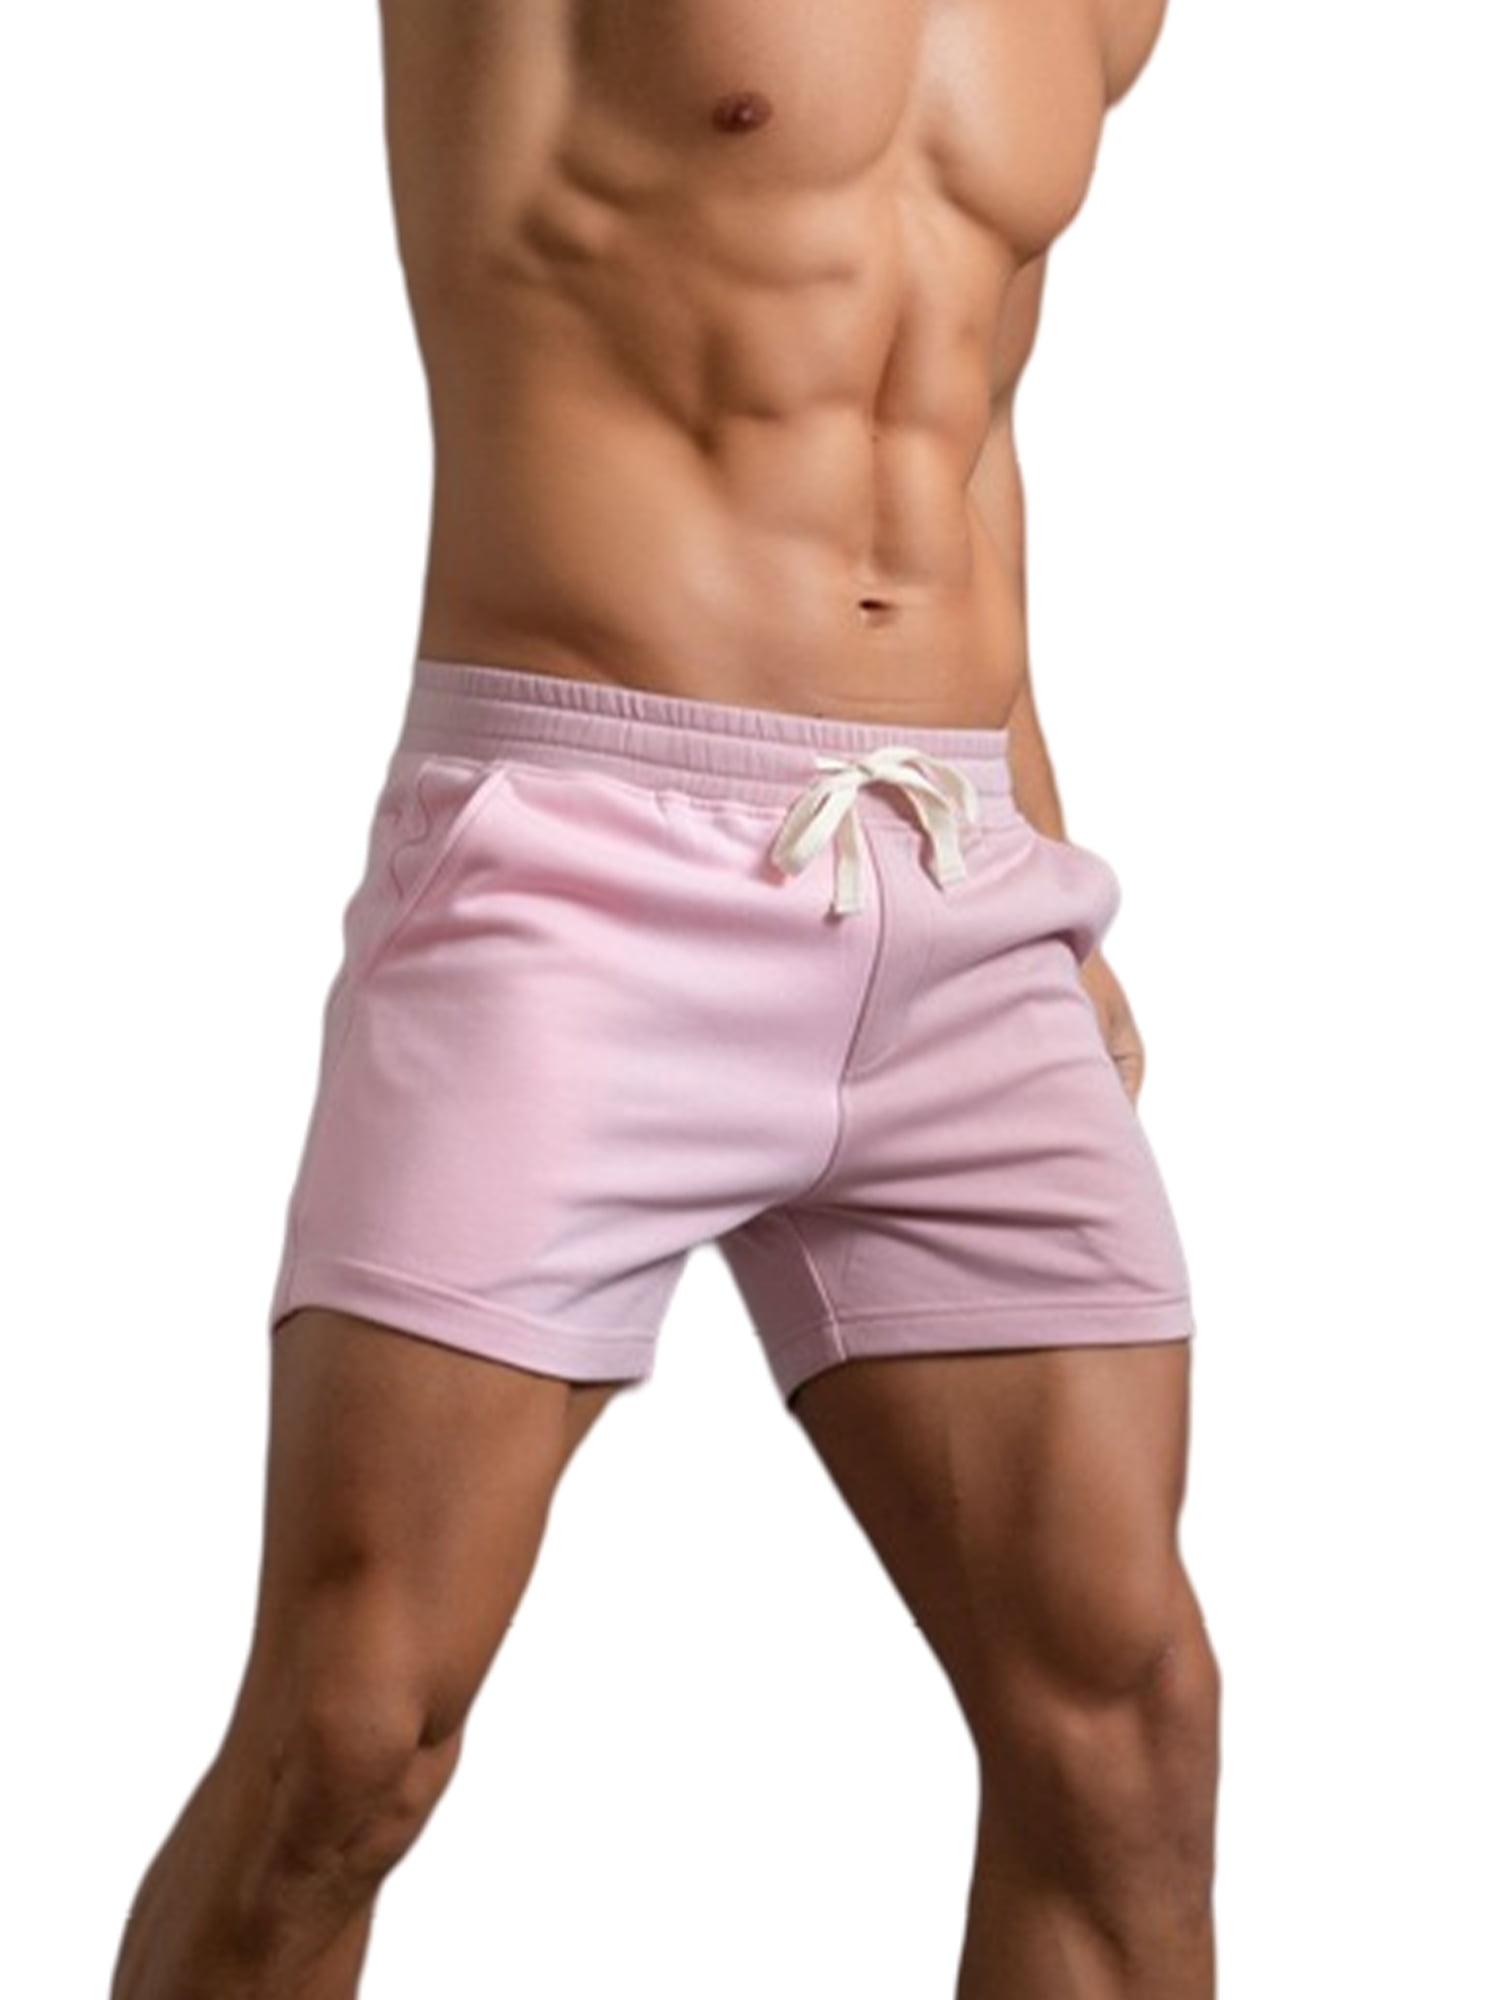 Franscart Cotton Soft Shorts Hot Pants for Kids Boys & Girls Multicolour  Print Pants Combo (Colour